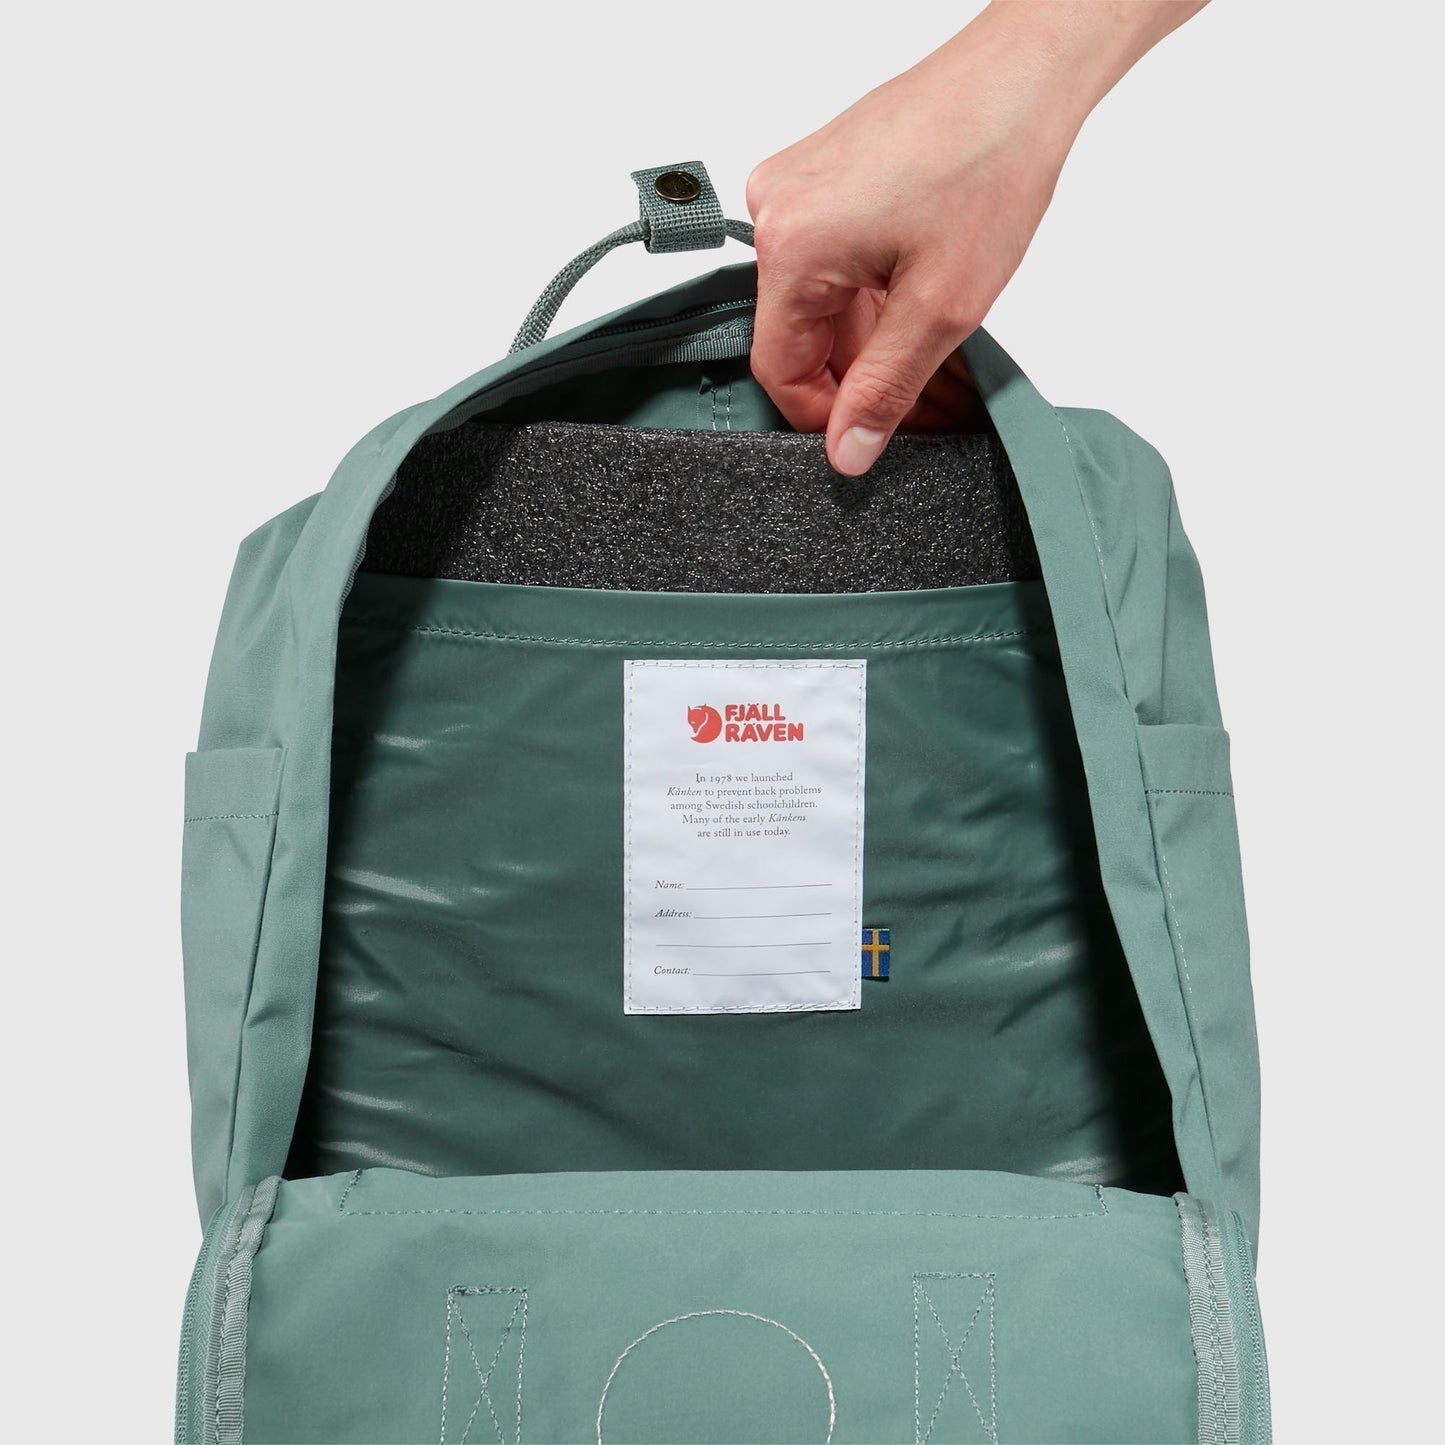 Fjallraven Kanken 狐狸袋 背囊 書包戶外背包 School bag outdoor backpack 16L - Graphite 23510-031